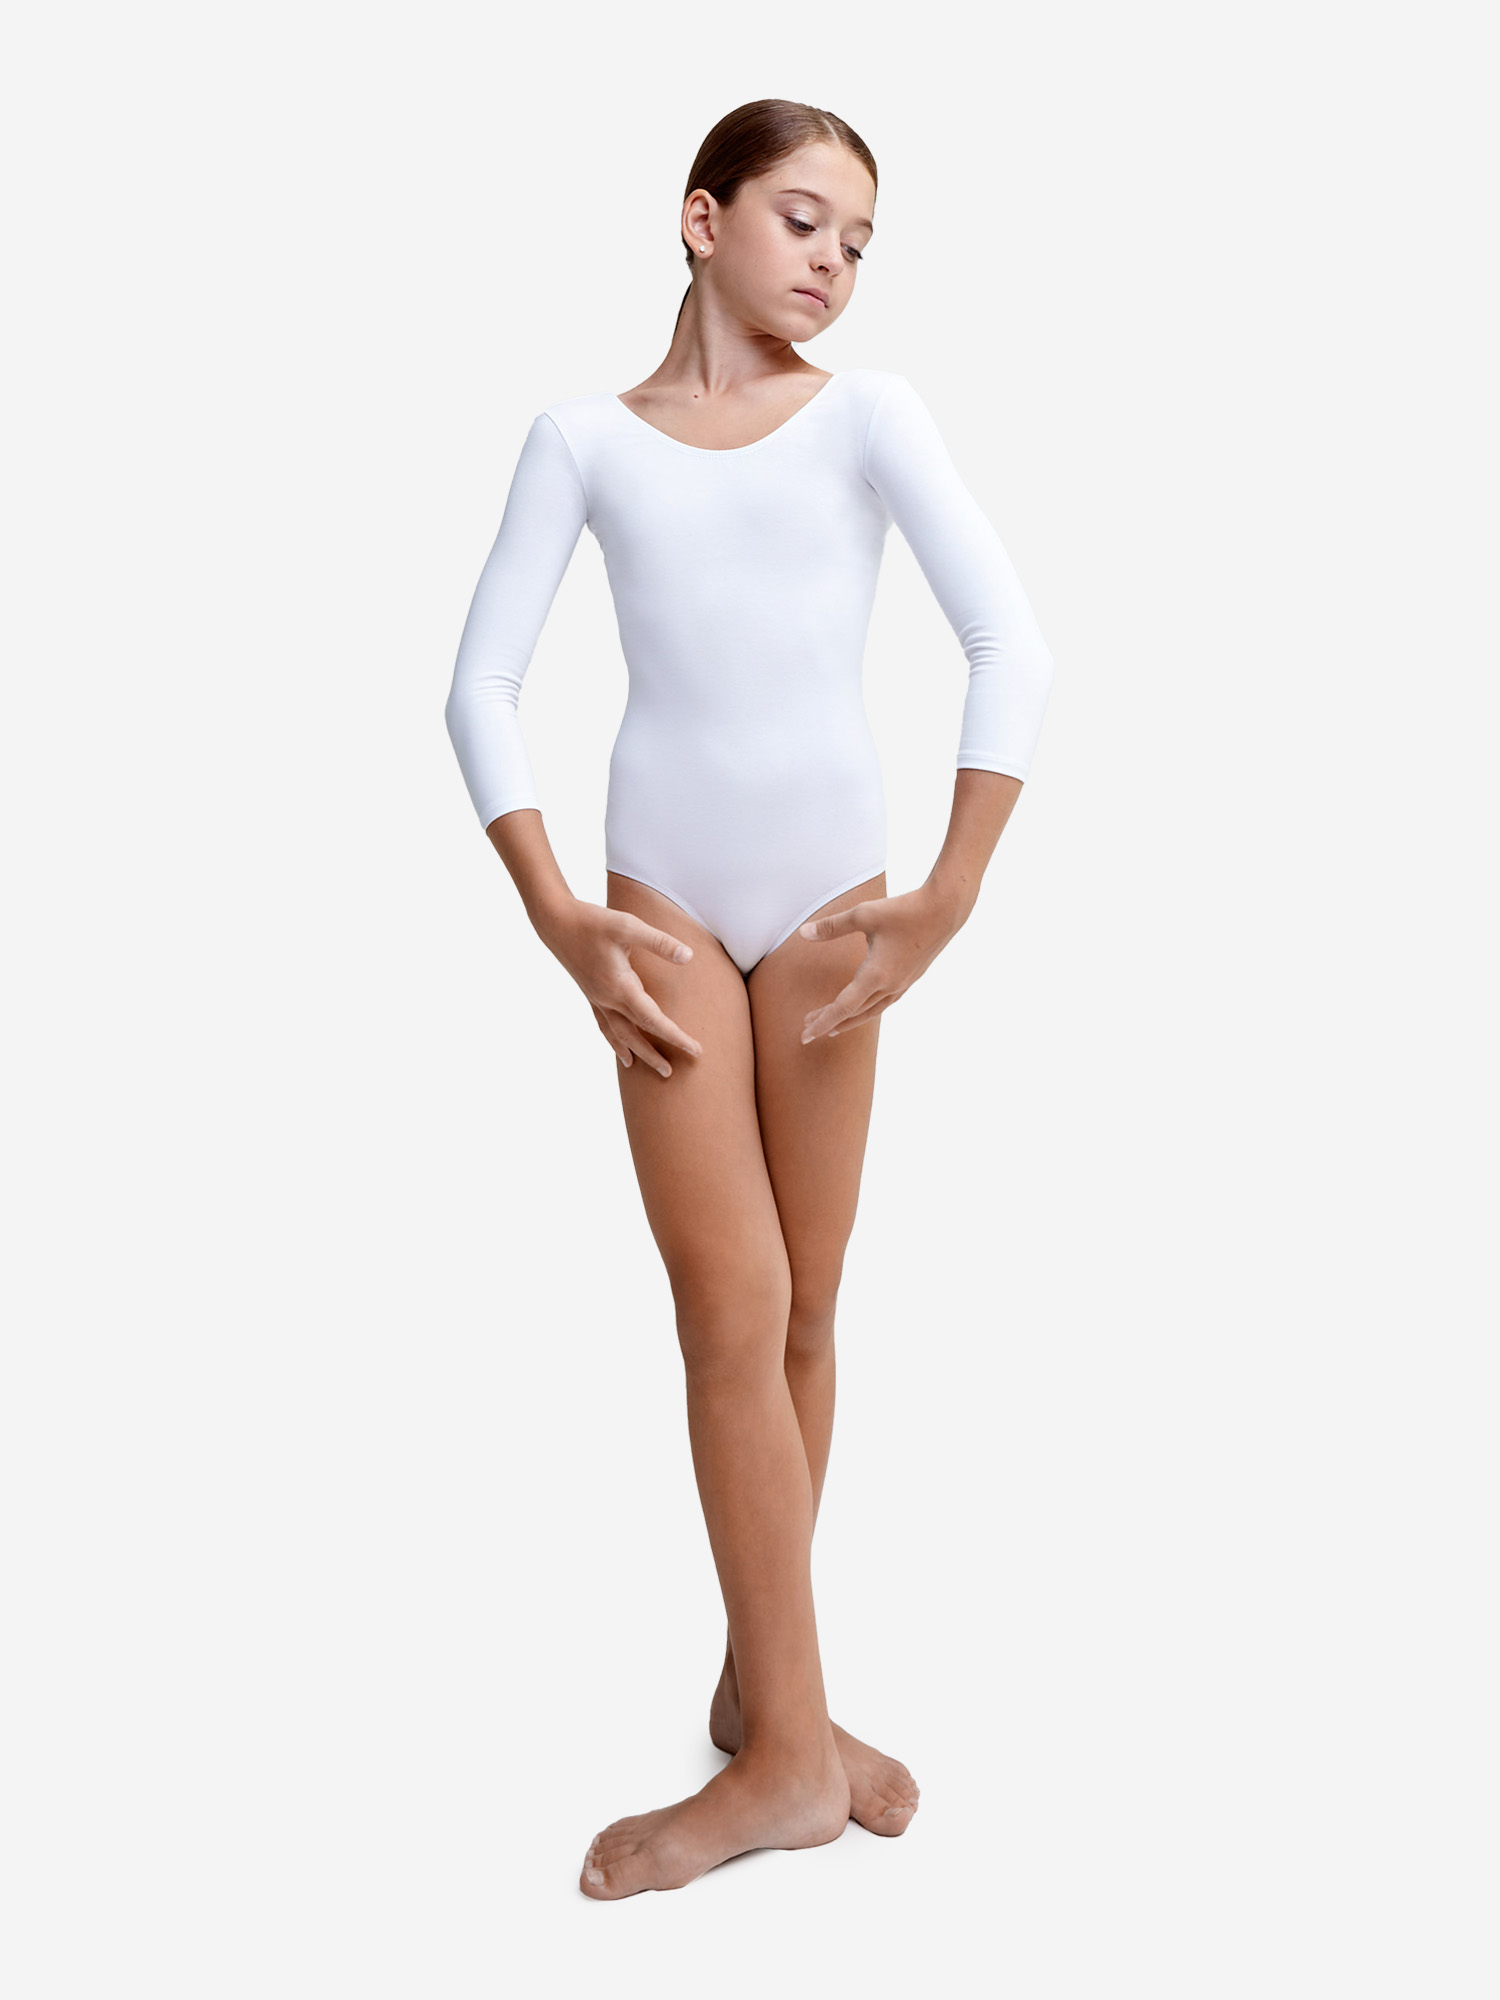 Купальник гимнастический Belkina без юбки для танцев и тренировок, Белый купальник гимнастический belkina с юбкой для танцев и тренировок голубой